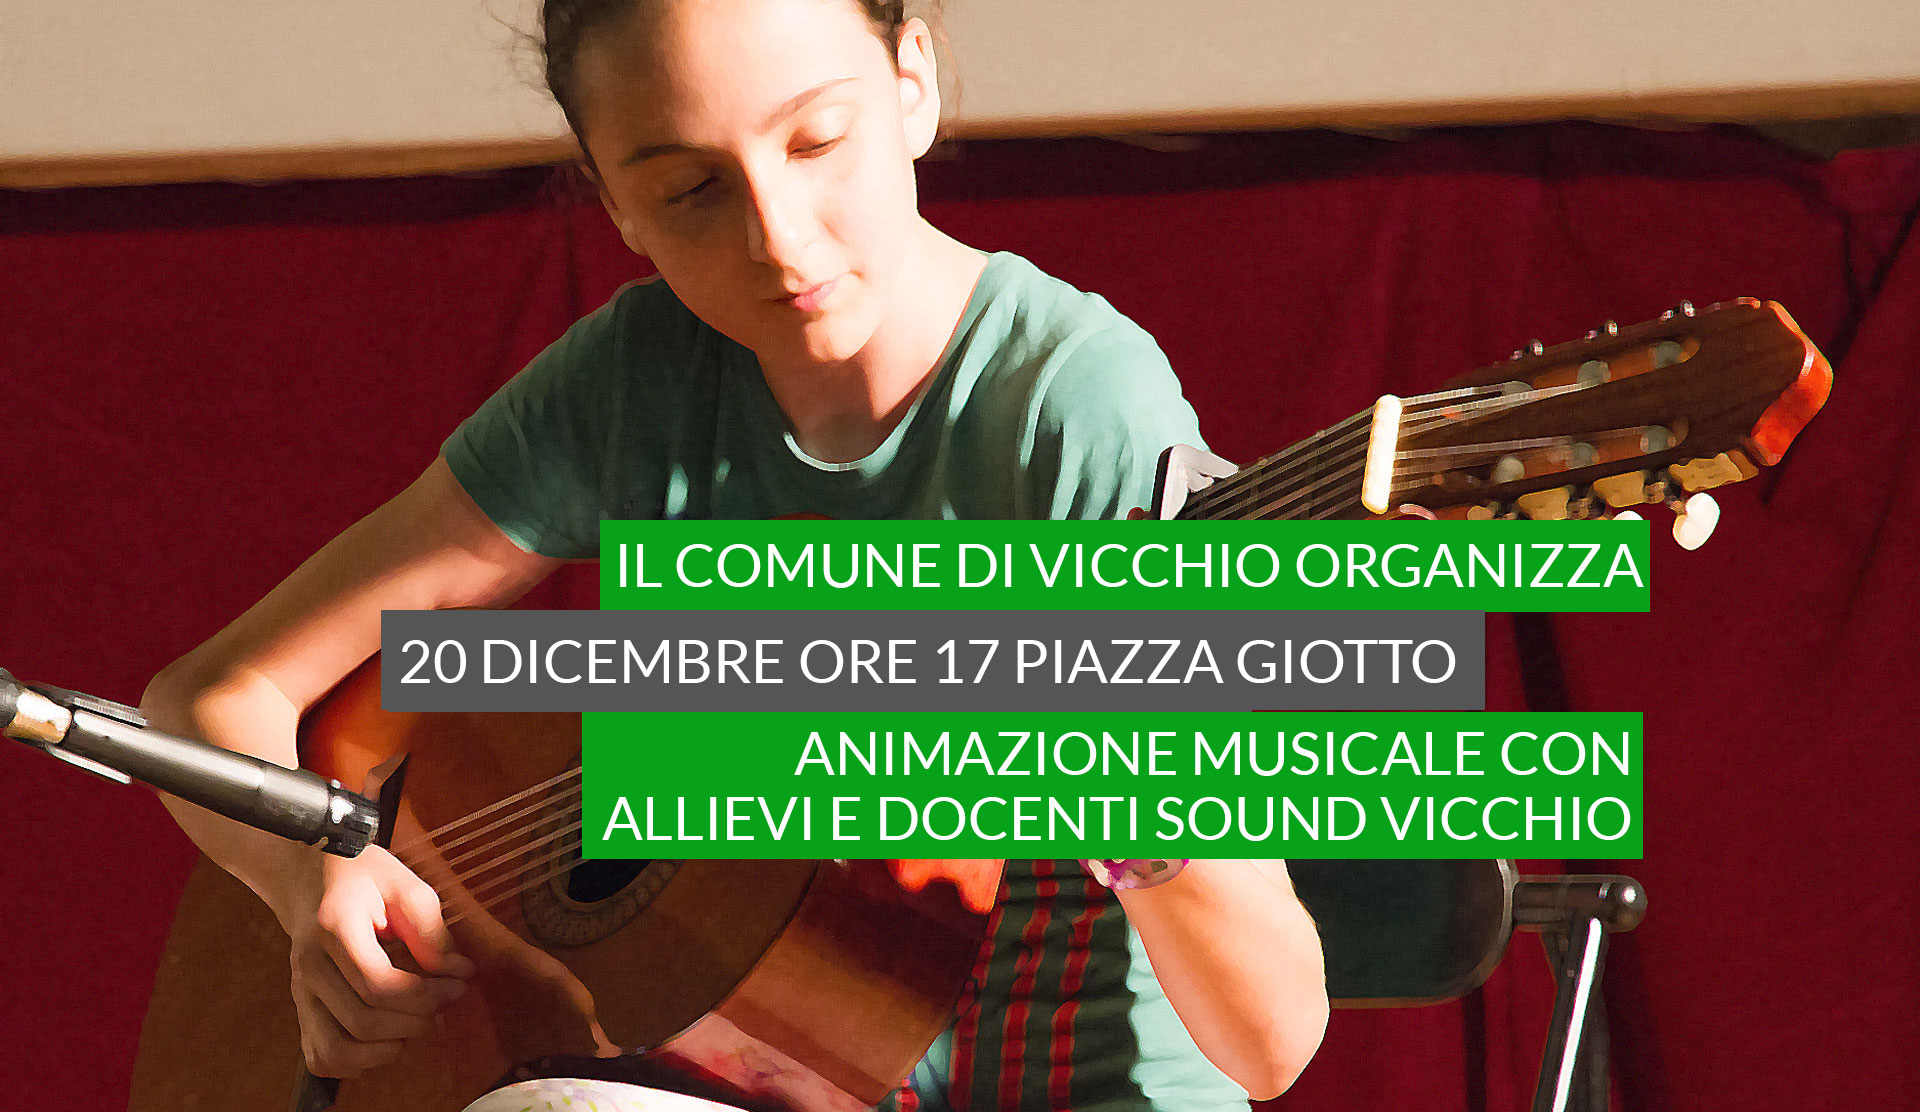 Il Comune di Vicchio organizza 20 Dicembre ore 17 animazione musicale con docenti allievi sound Vicchio